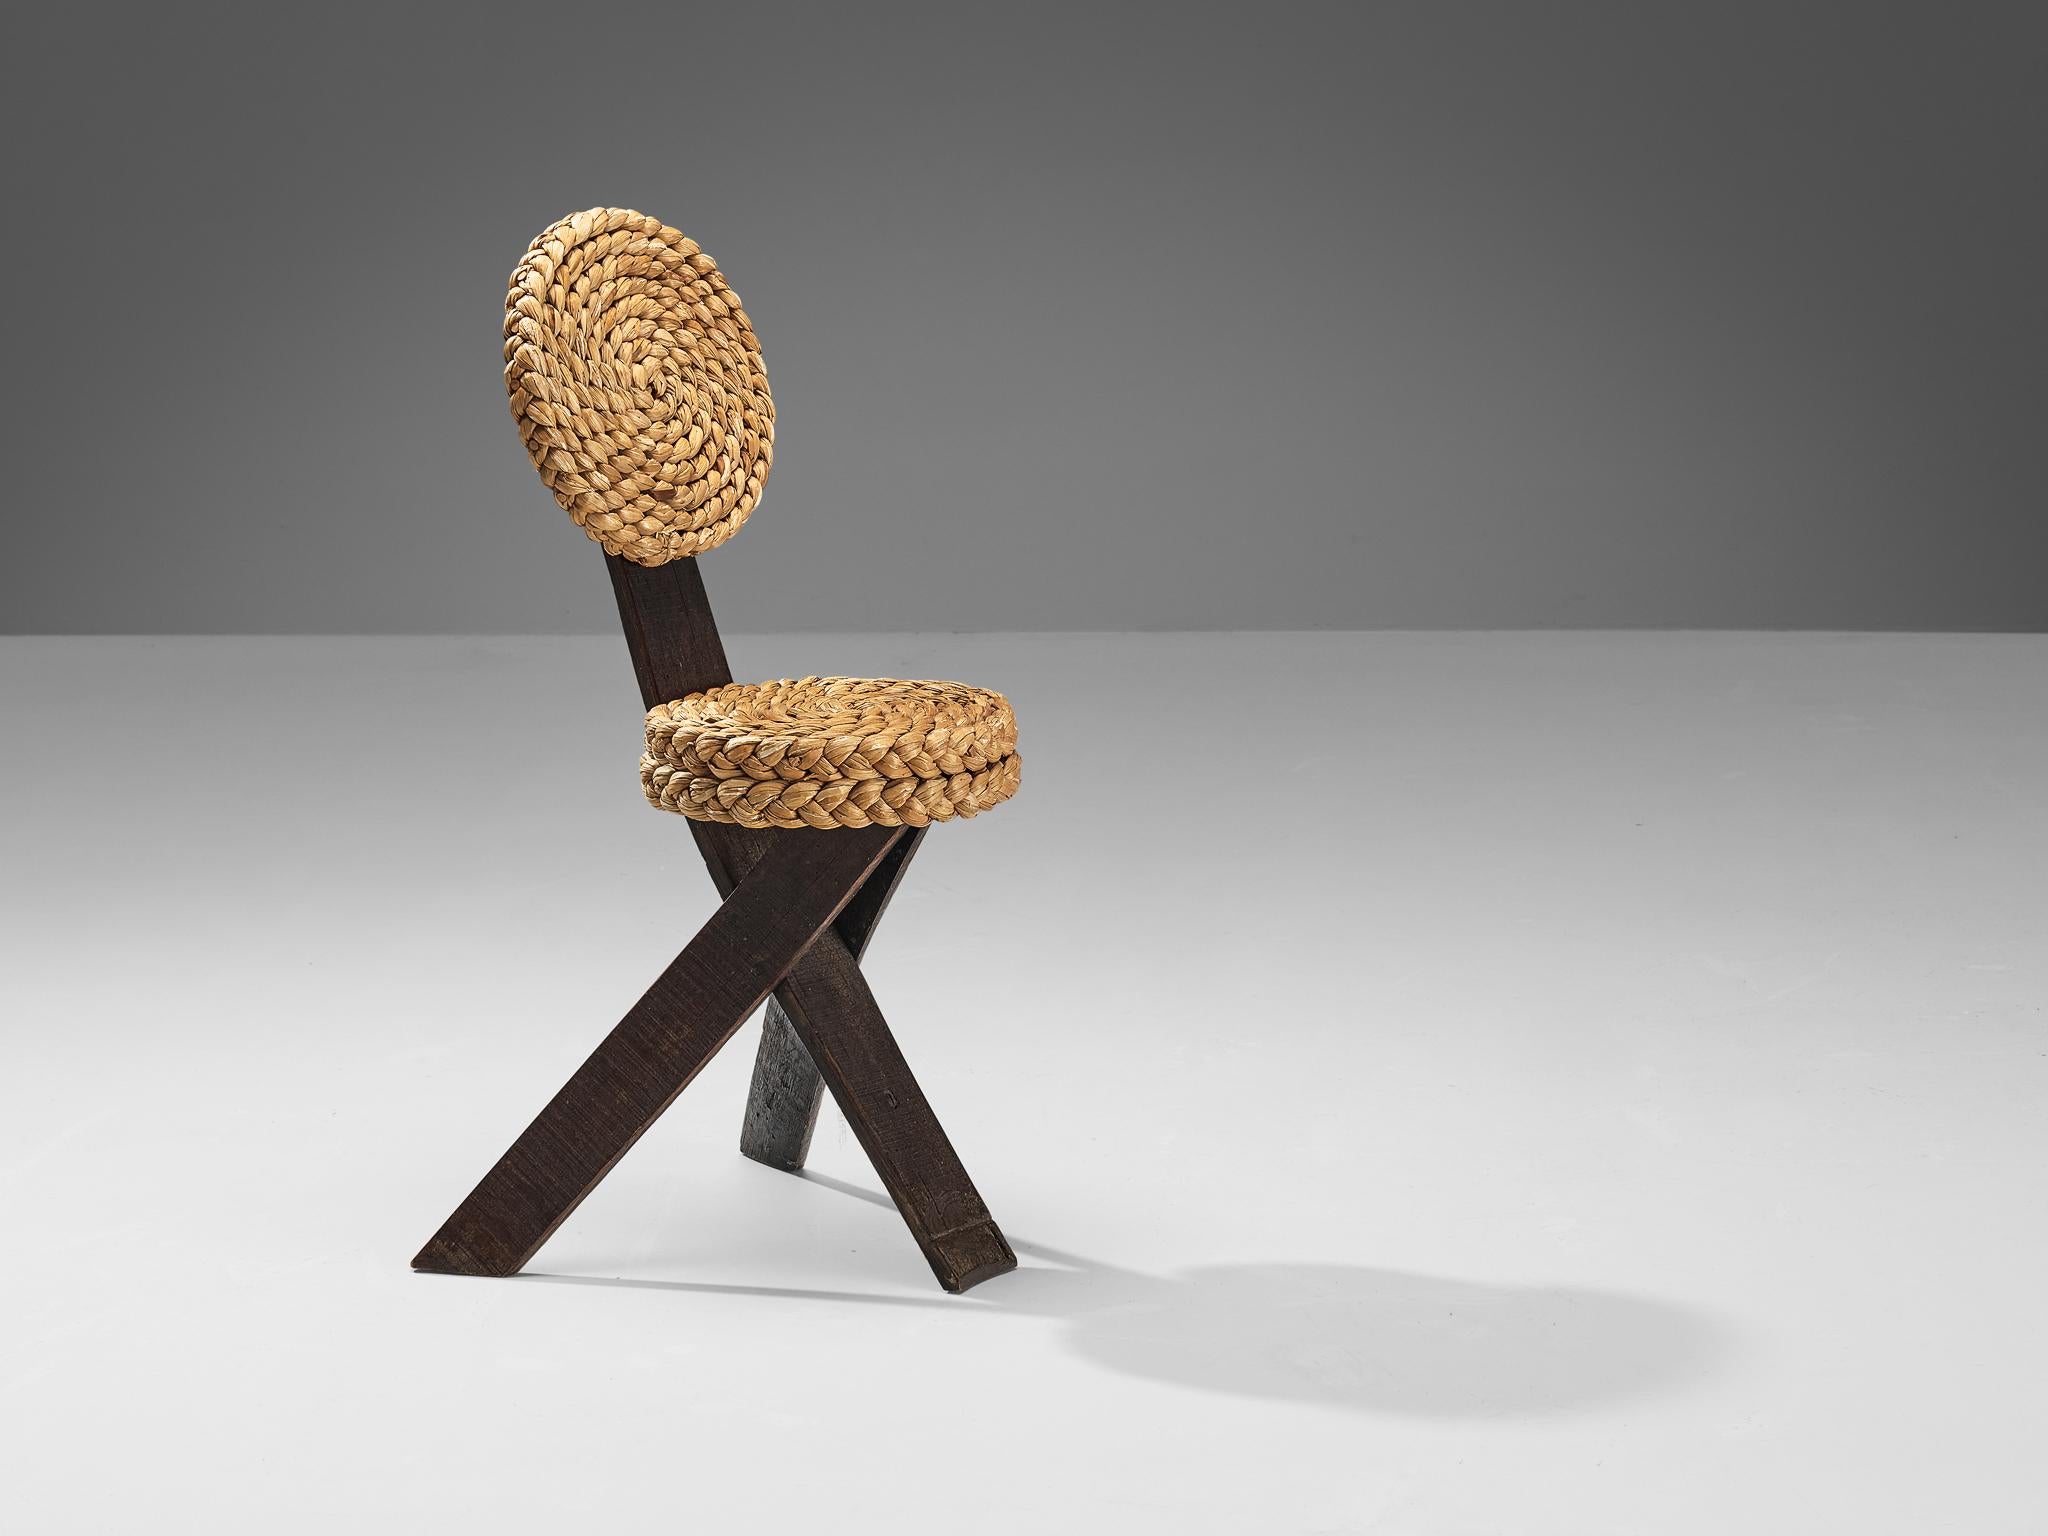 Adrien Audoux und Frida Minet, Beistellstuhl, Eiche, Stroh, Eisen, Frankreich, 1950er Jahre

Dieser skulpturale Beistellstuhl wurde von dem französischen Designerpaar Adrien Audoux und Frida Minet entworfen. Die drei flachen Beine sind aus dunkler